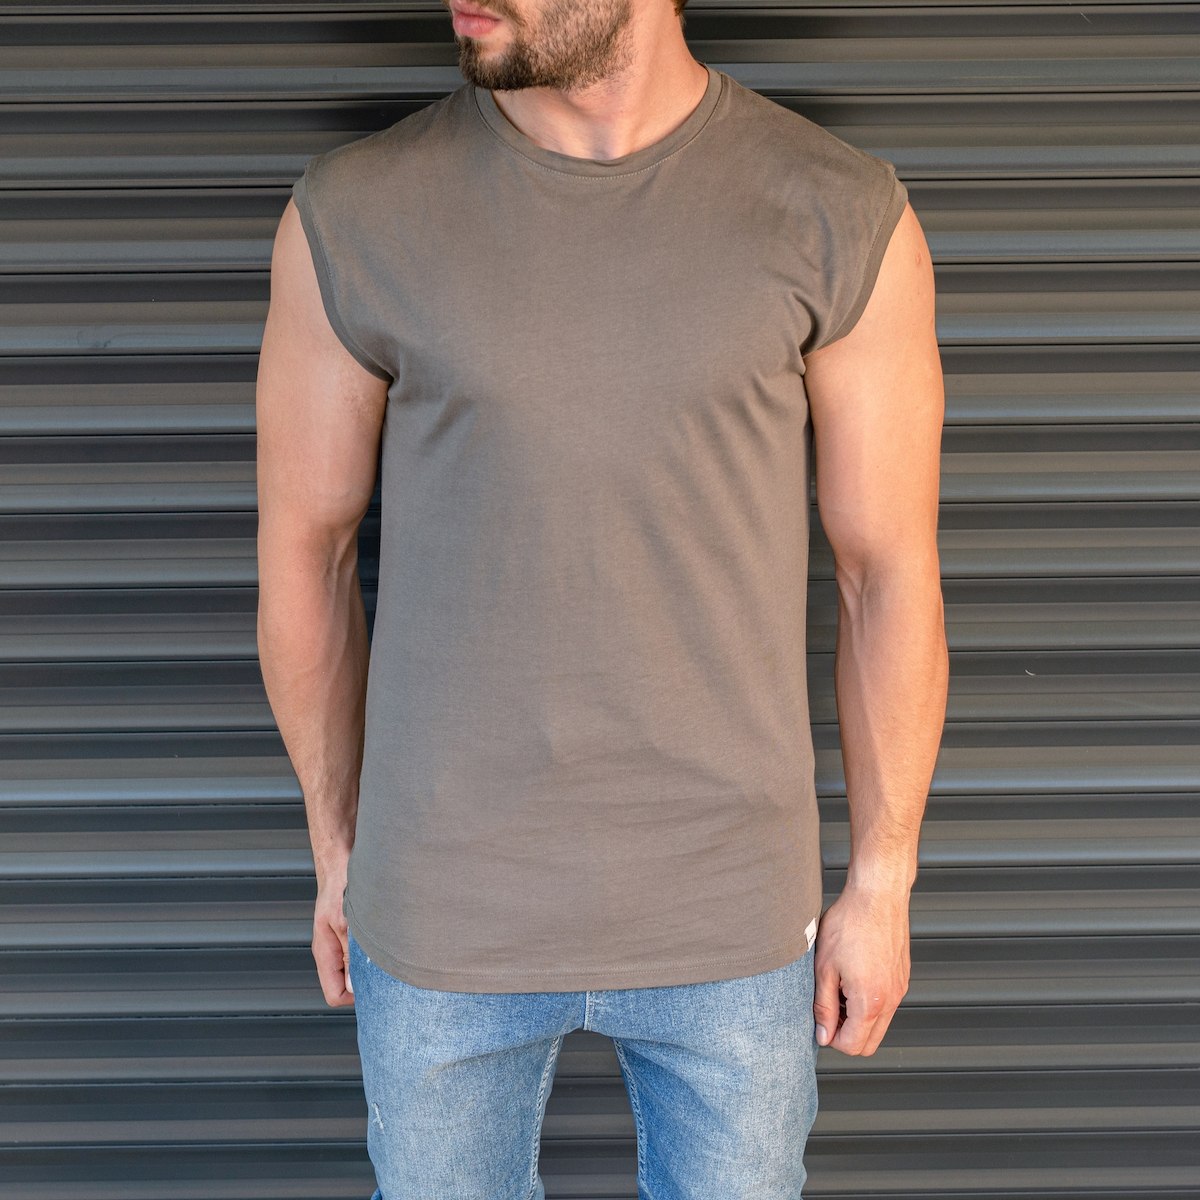 Men's Basic Sleeveless T-Shirt In Khaki